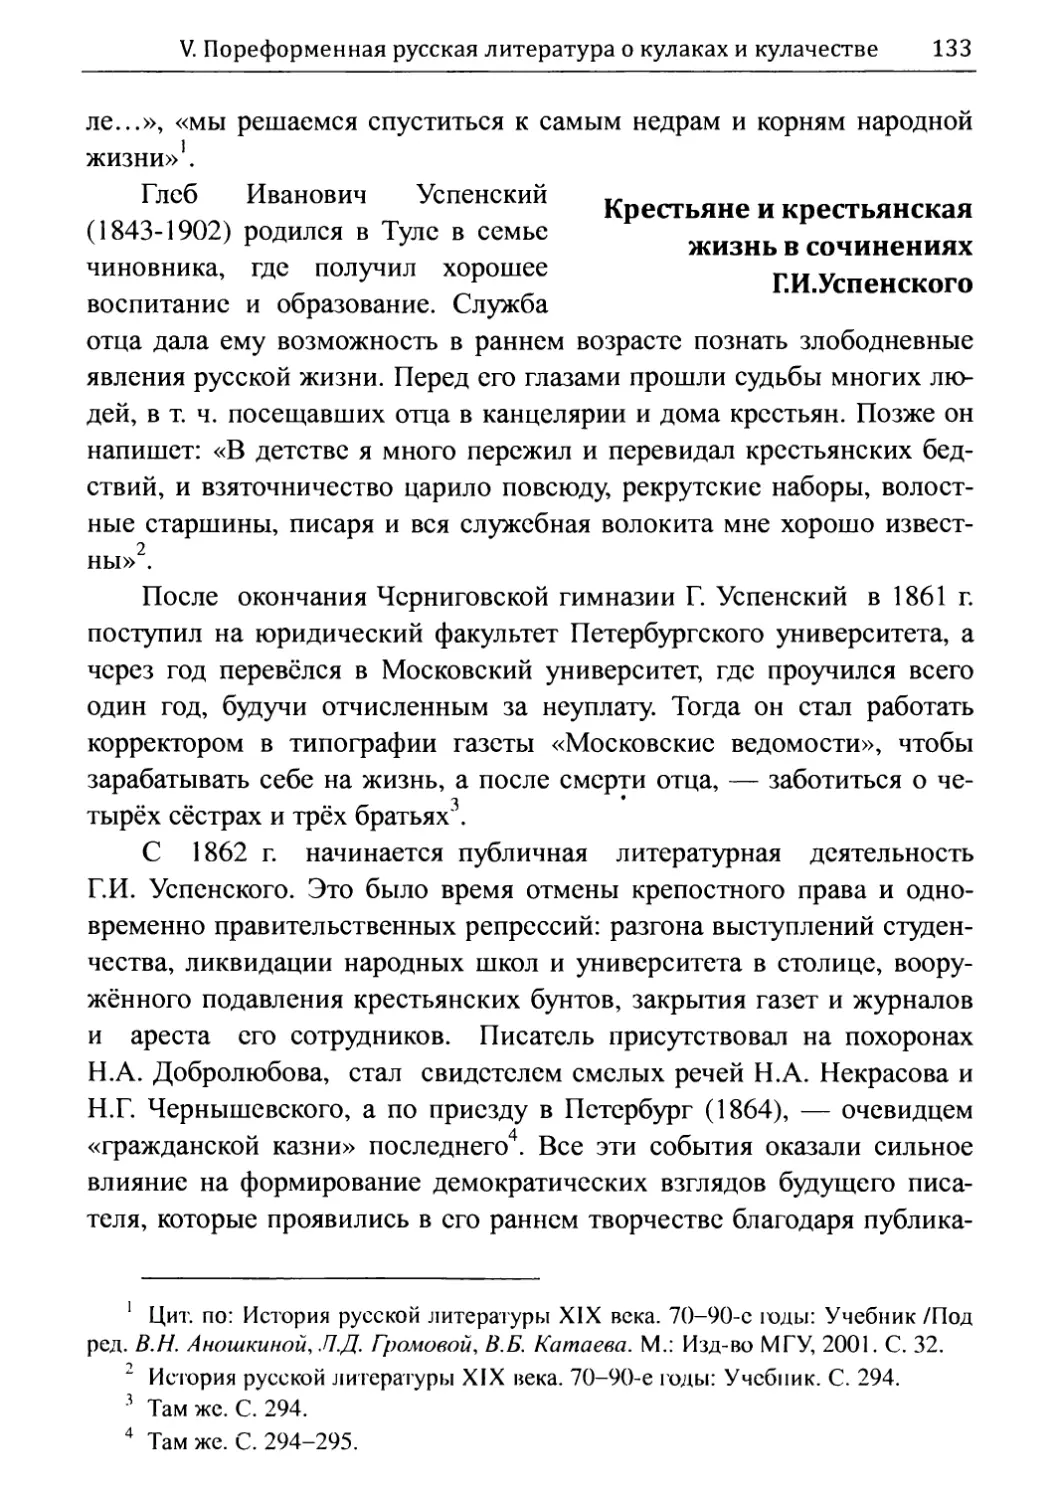 Крестьяне и крестьянская жизнь в сочинениях Г. И. Успенского